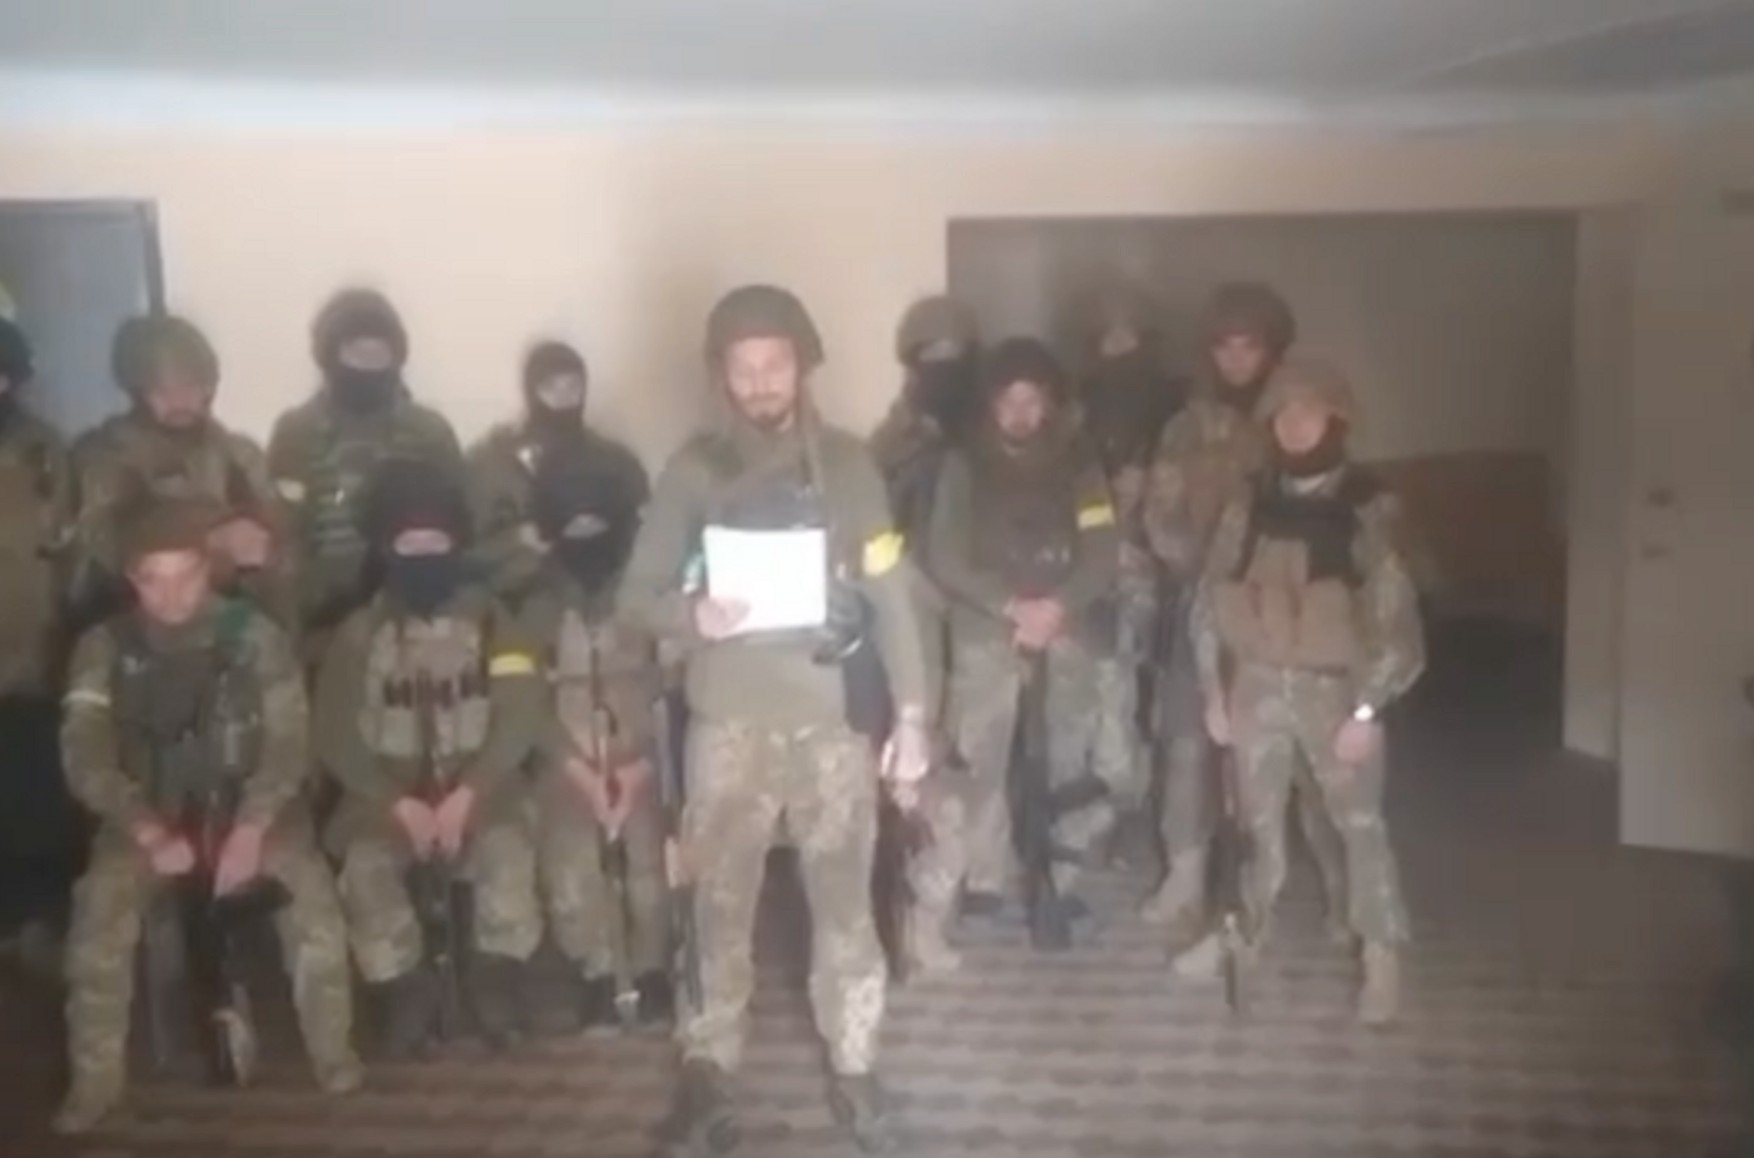 Насильно мобилизованных в армию «ДНР» бойцов отправили в СИЗО за отказ выполнять приказы. Они записали новое видео из изолятора